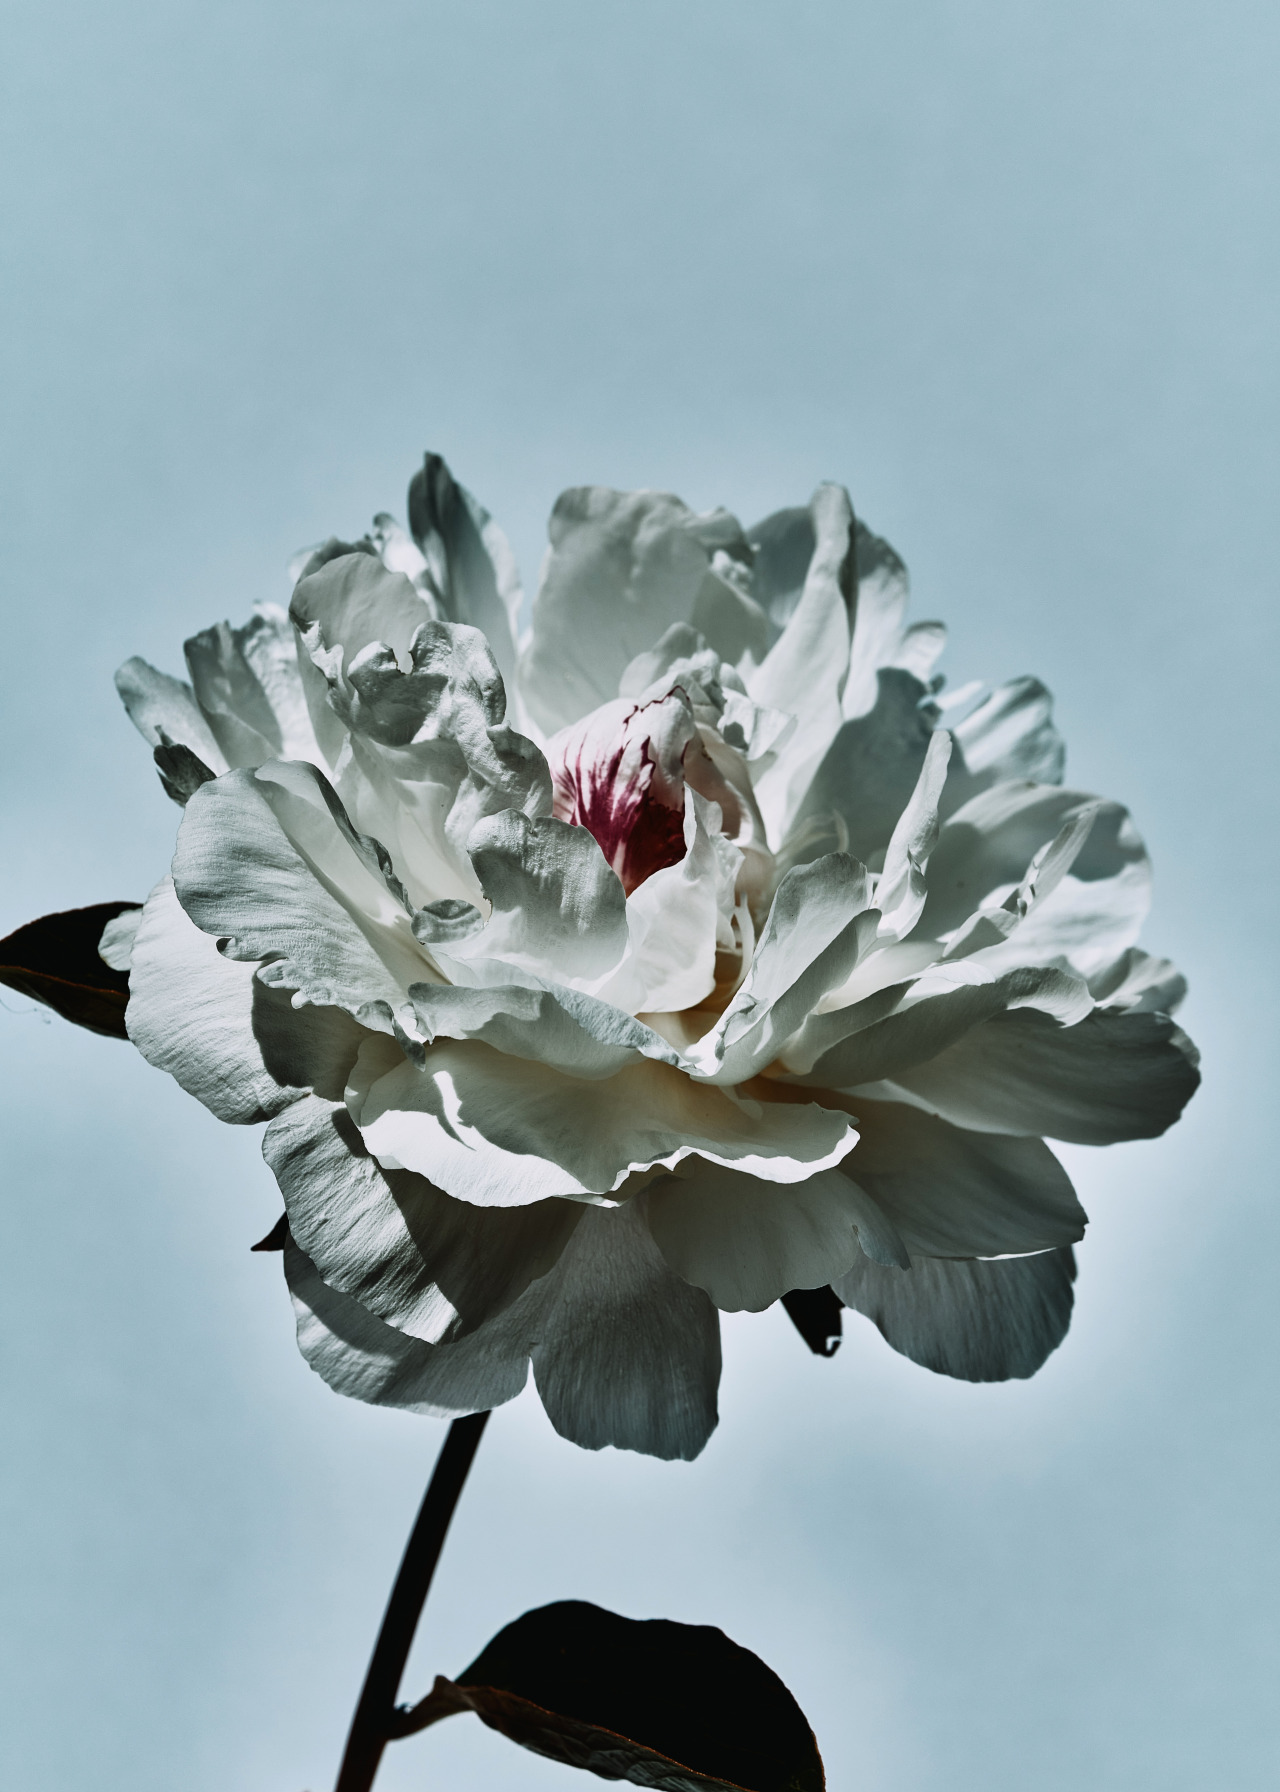 PIVOINE BLANCHE
Serie : “Flower From My Secret Garden”
Photo : Frederic Sofiyana